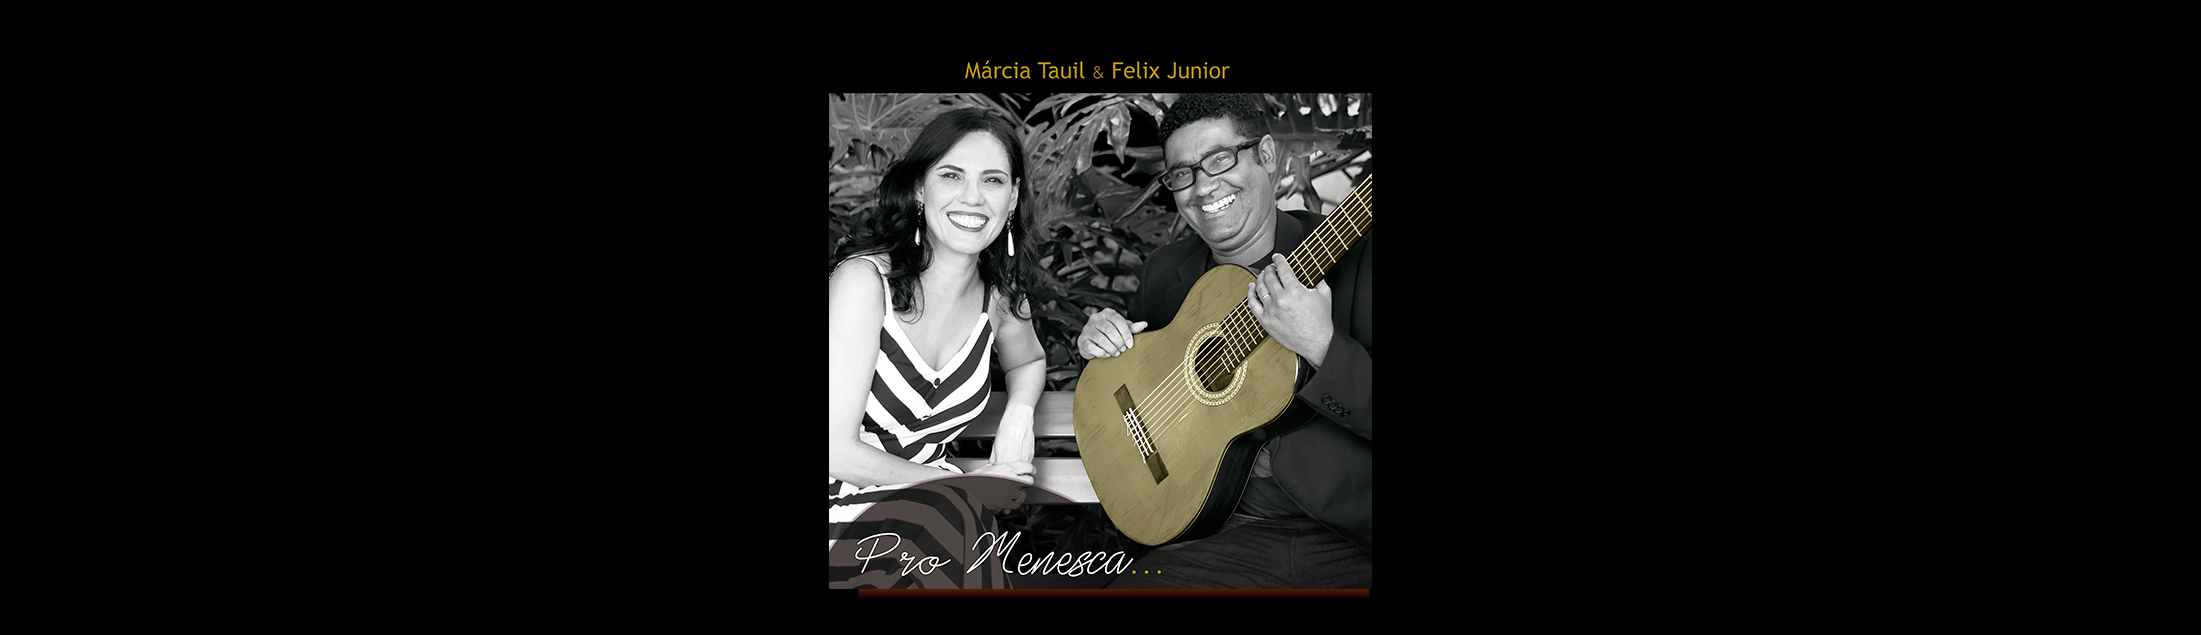 Márcia Tauil e Felix Junior lançam álbum em homenagem a Roberto Menescal